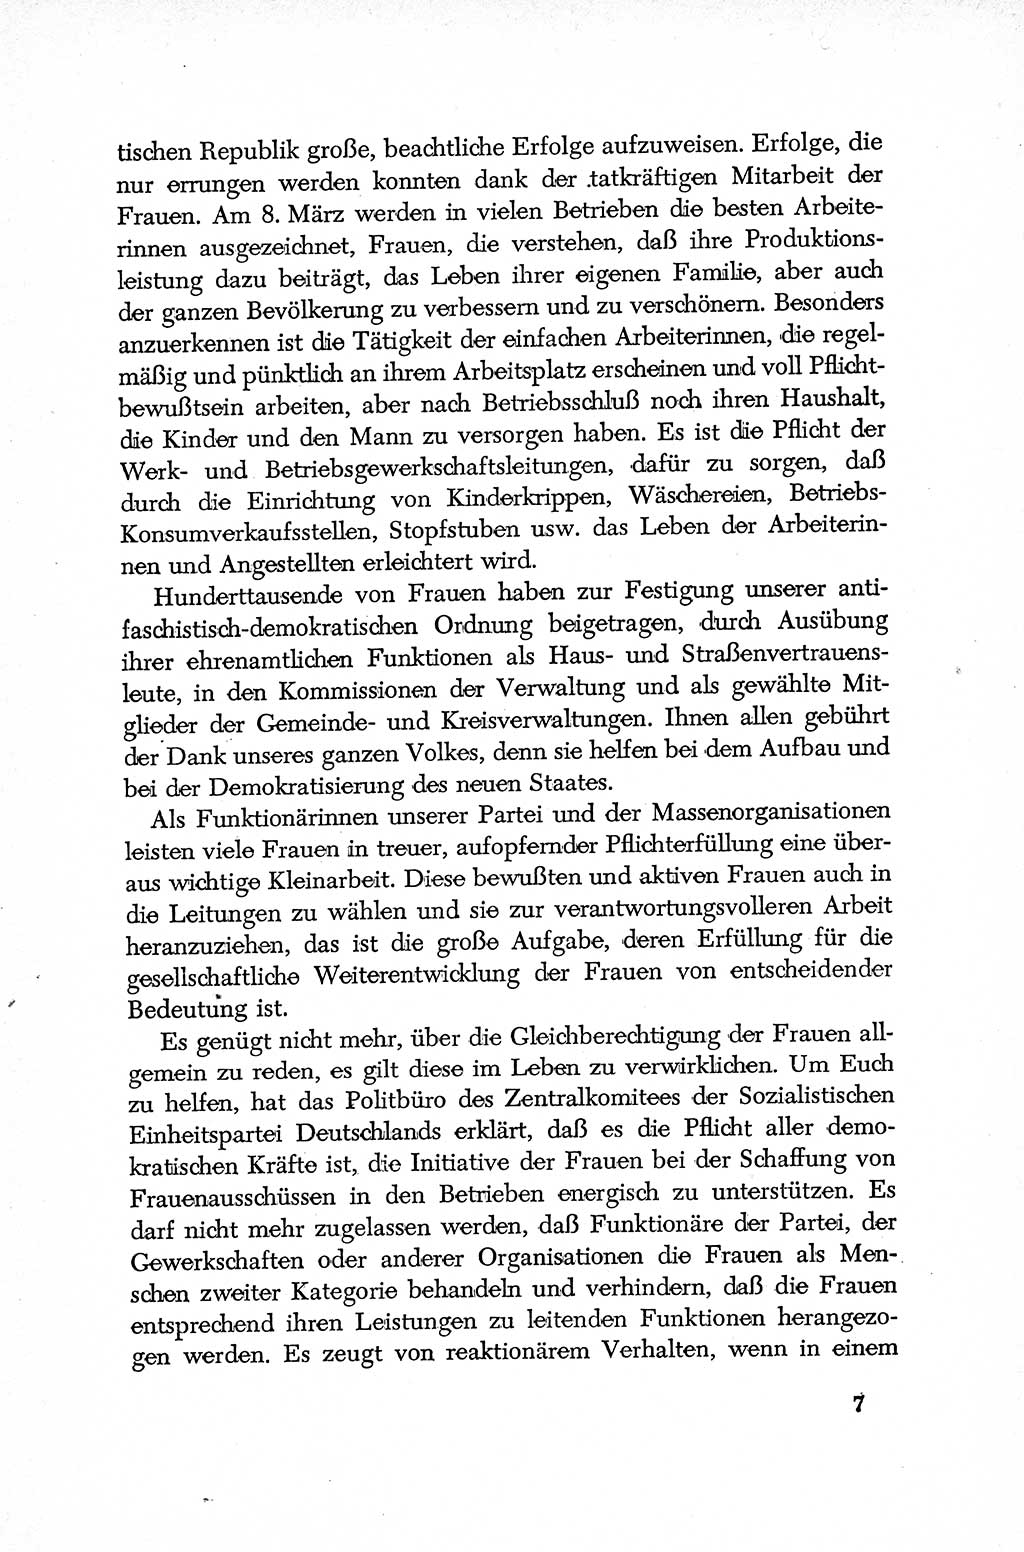 Dokumente der Sozialistischen Einheitspartei Deutschlands (SED) [Deutsche Demokratische Republik (DDR)] 1952-1953, Seite 7 (Dok. SED DDR 1952-1953, S. 7)